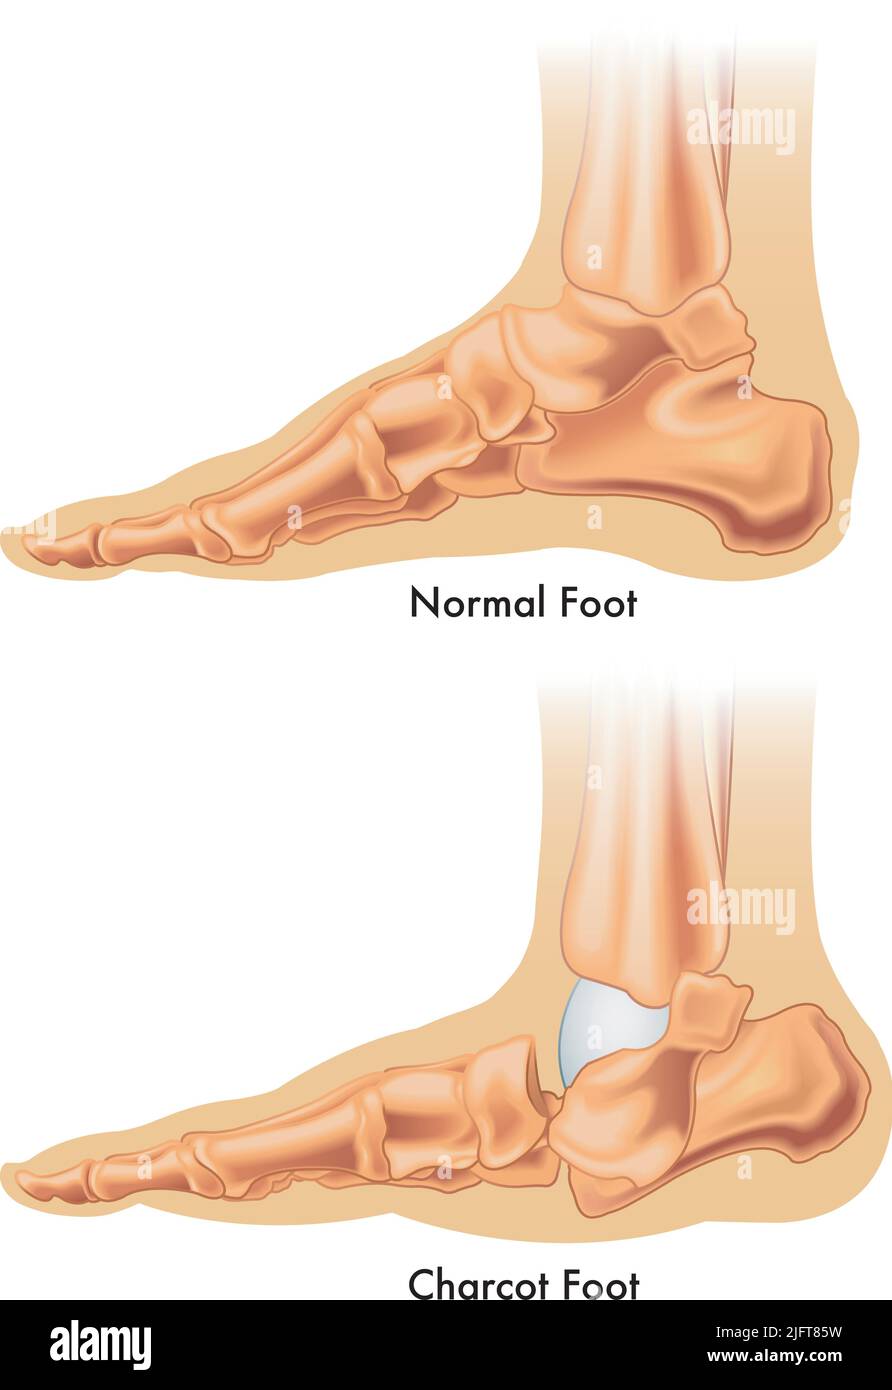 Die medizinische Abbildung zeigt den Unterschied zwischen einem normalen Fuß und einem charcot-Fuß. Stock Vektor